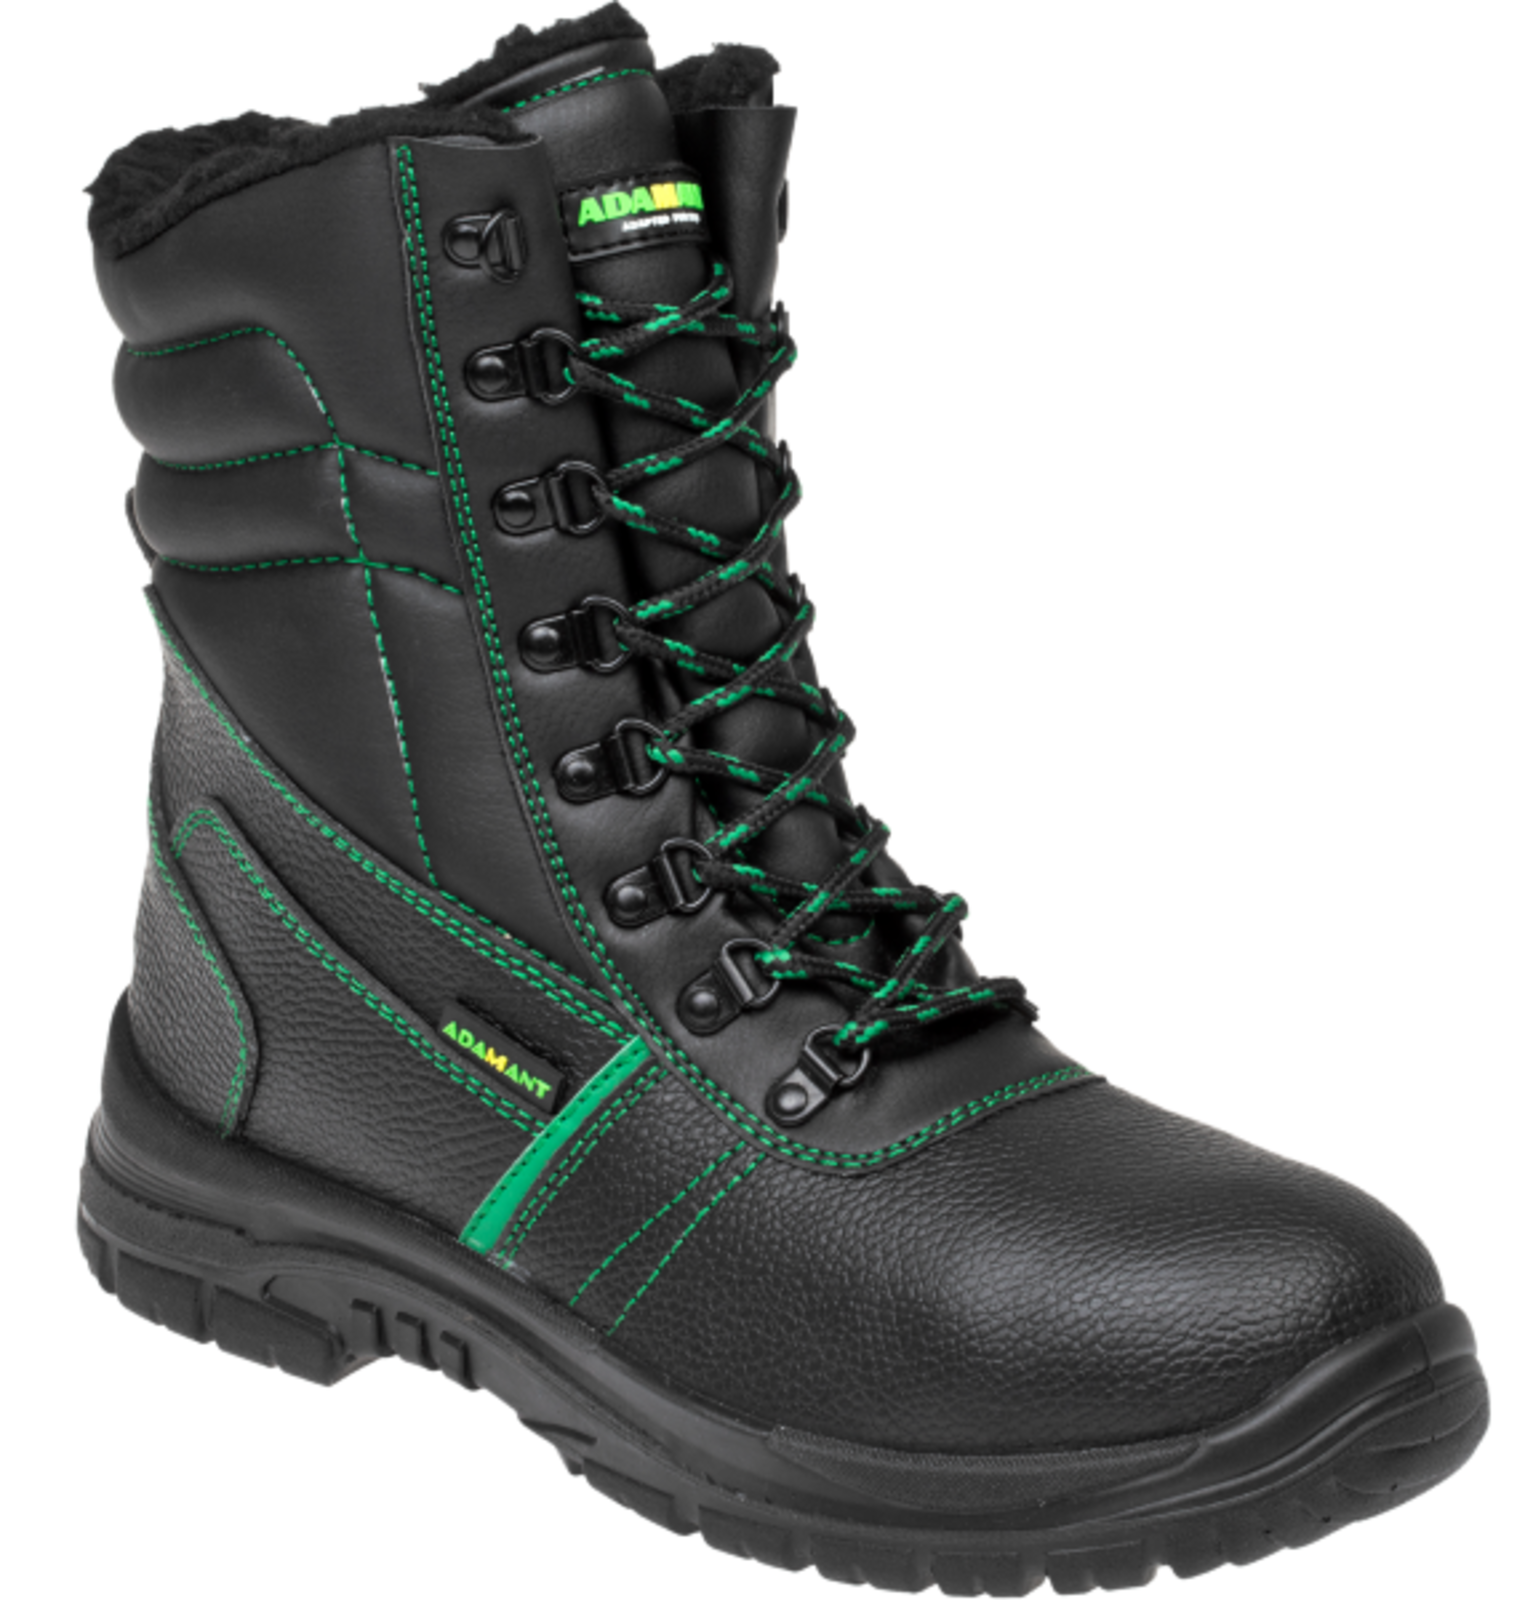 Zimná vysoká bezpečnostná obuv Adamant Classic S3 - veľkosť: 43, farba: čierna